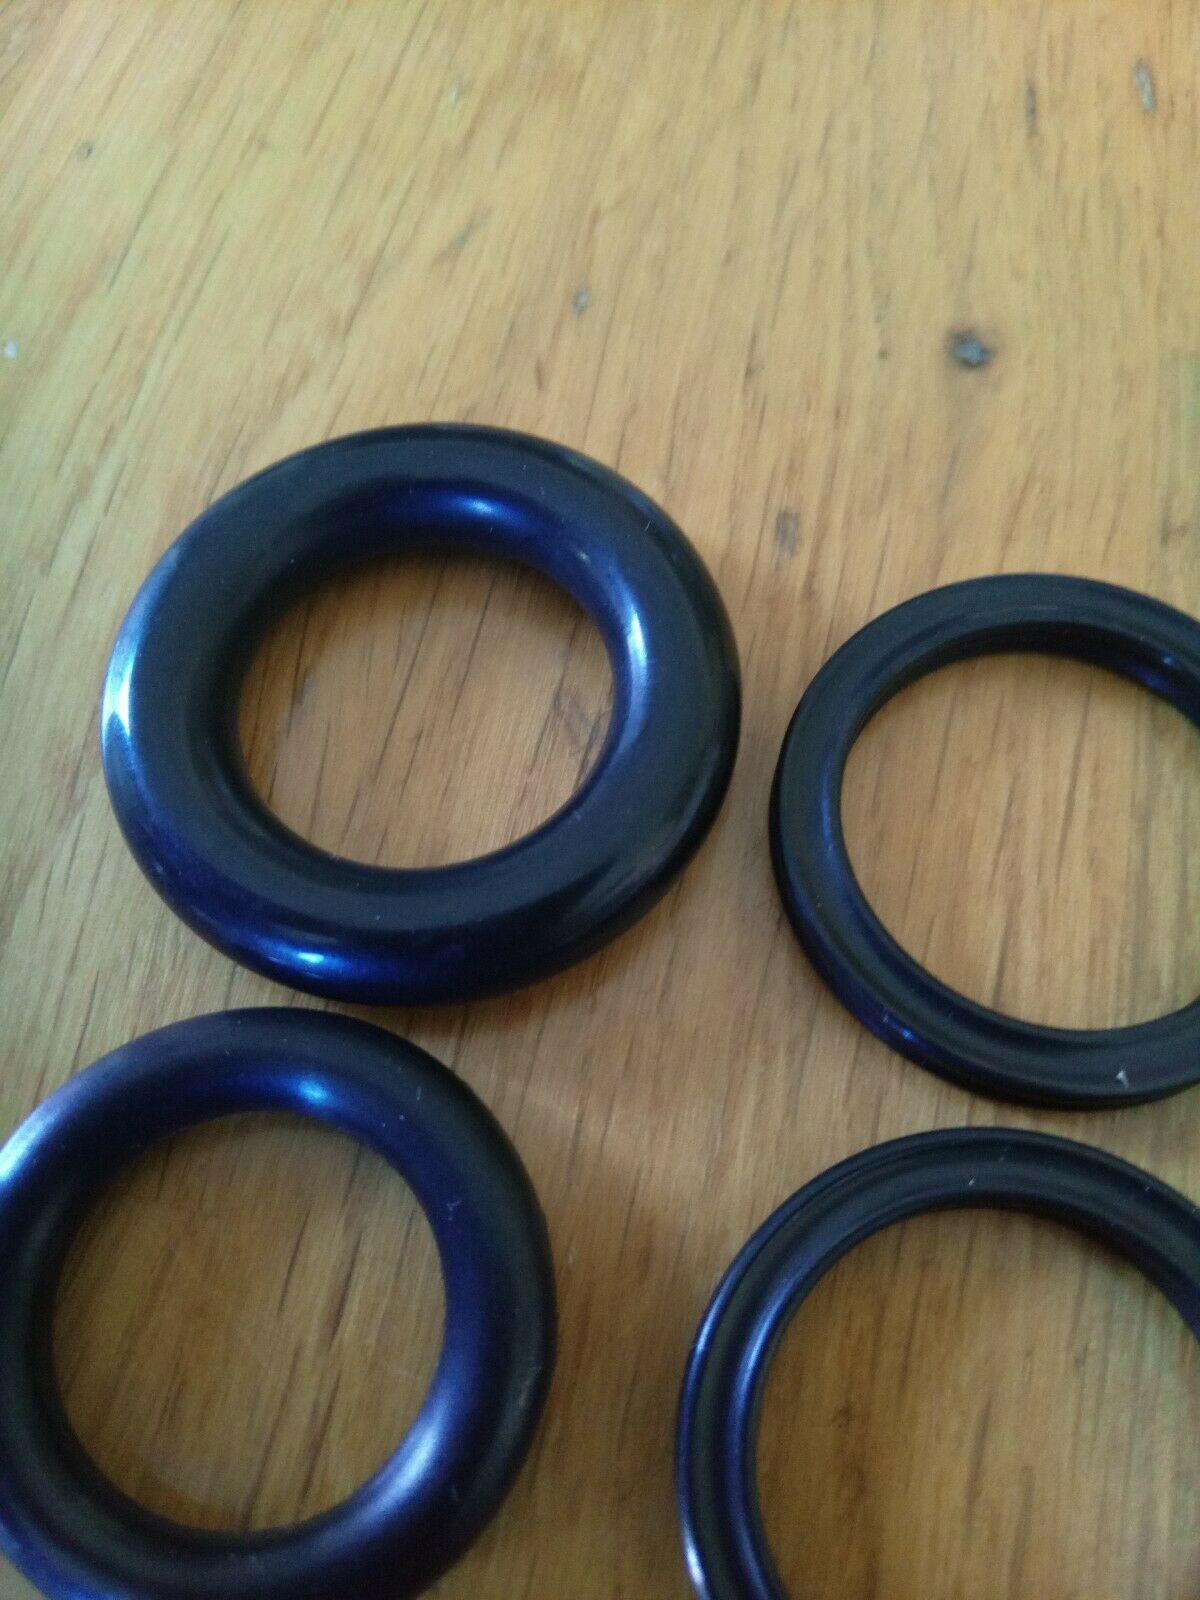 Kango Breaker Piston Rings,Anvil Seals 900/950 Model (All sizes of piston rings)